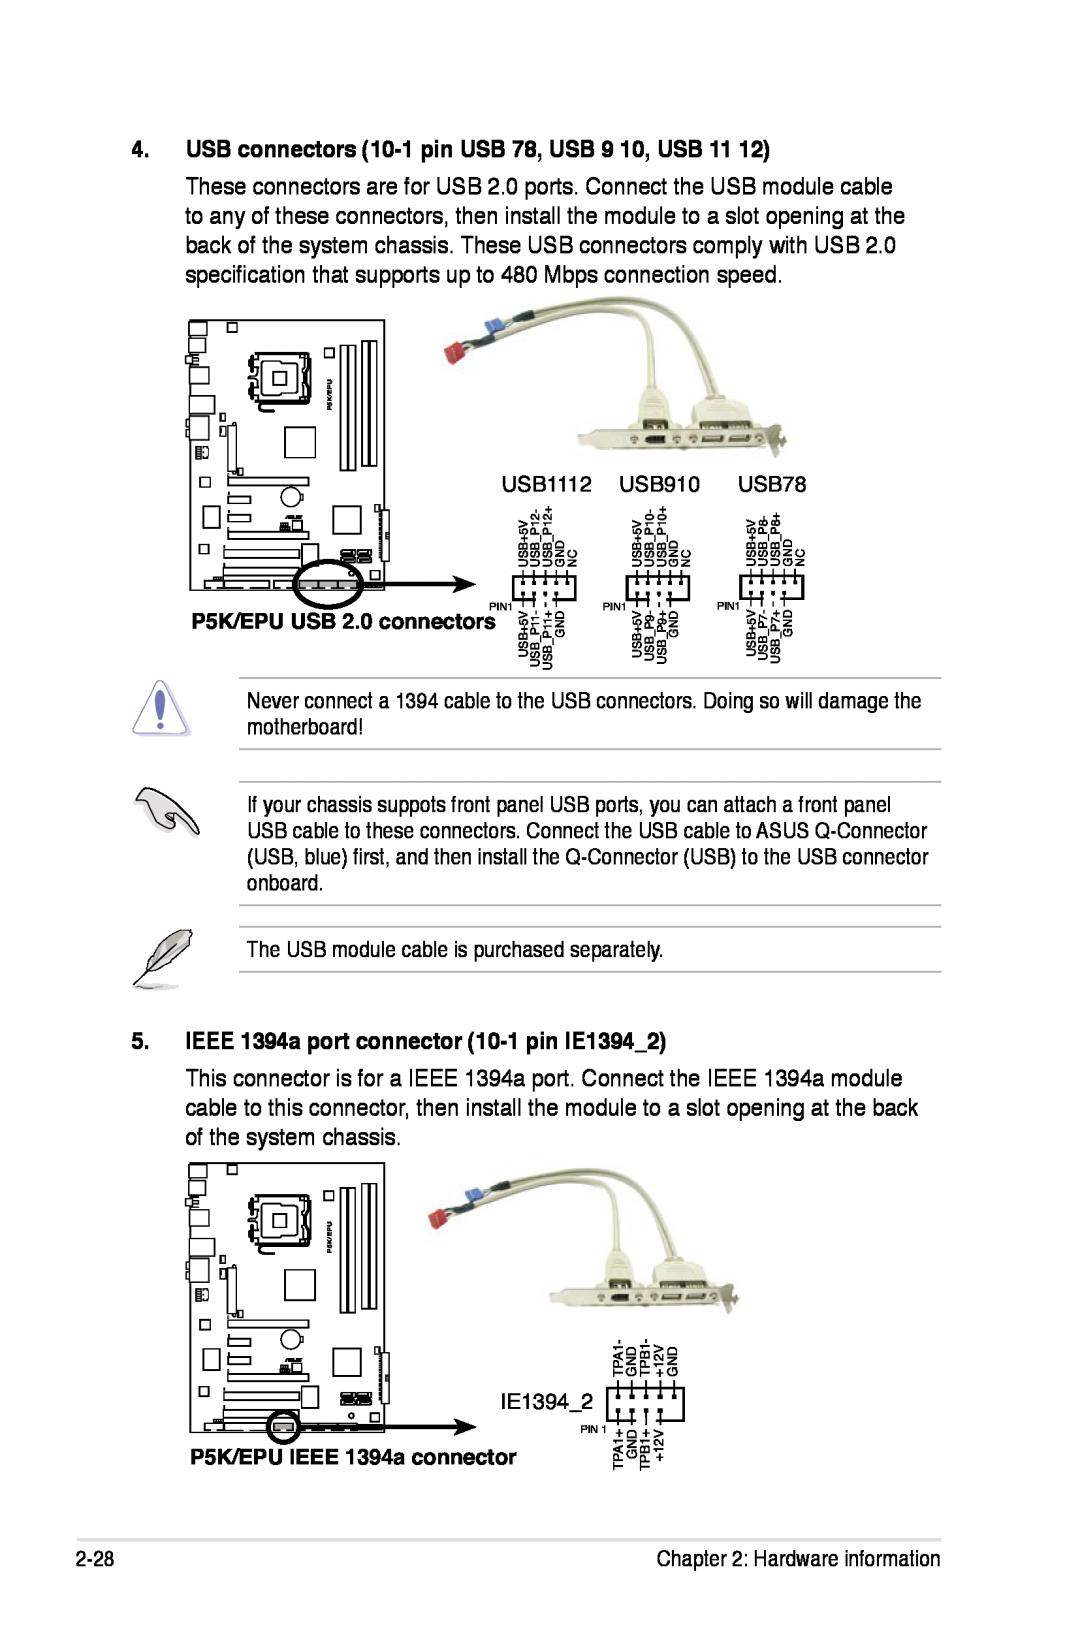 Asus P5K/EPU manual USB connectors 10-1 pin USB 78, USB 9 10, USB 11, IEEE 1394a port connector 10-1 pin IE13942 